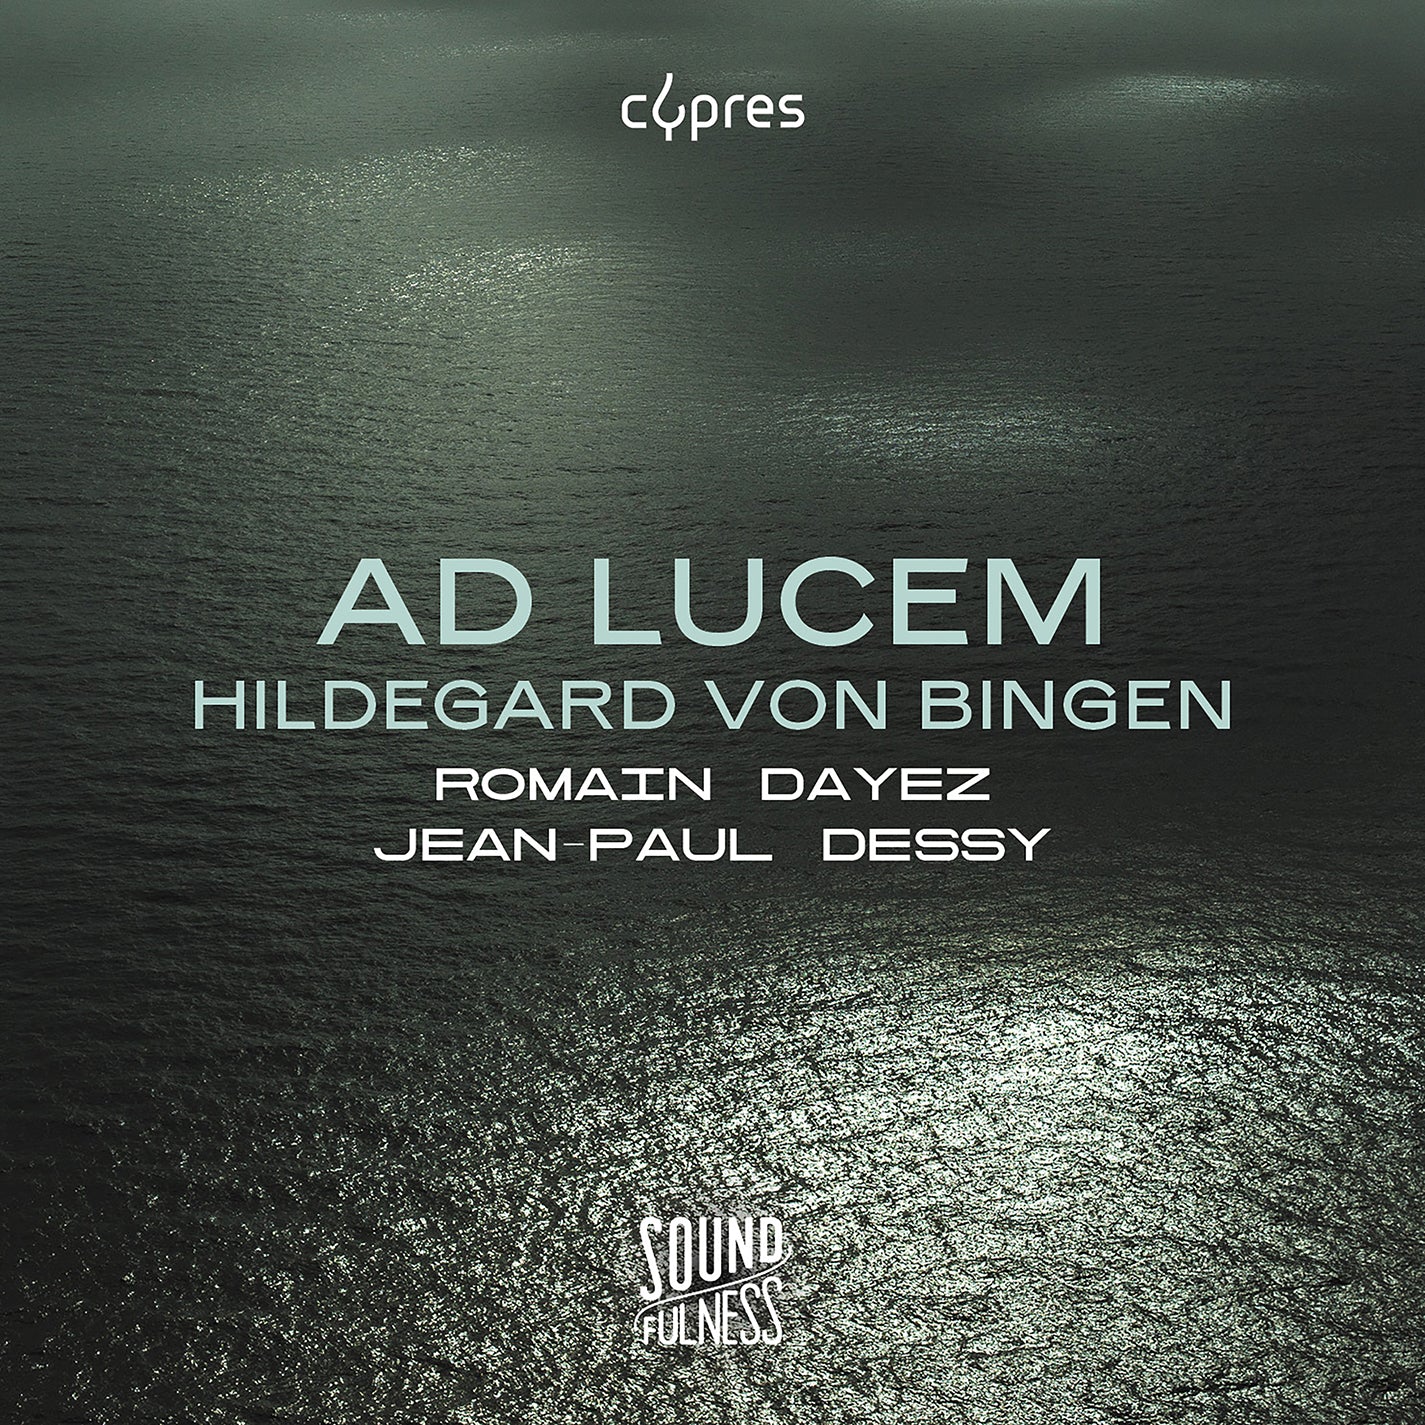 Bingen: Ad Lucem